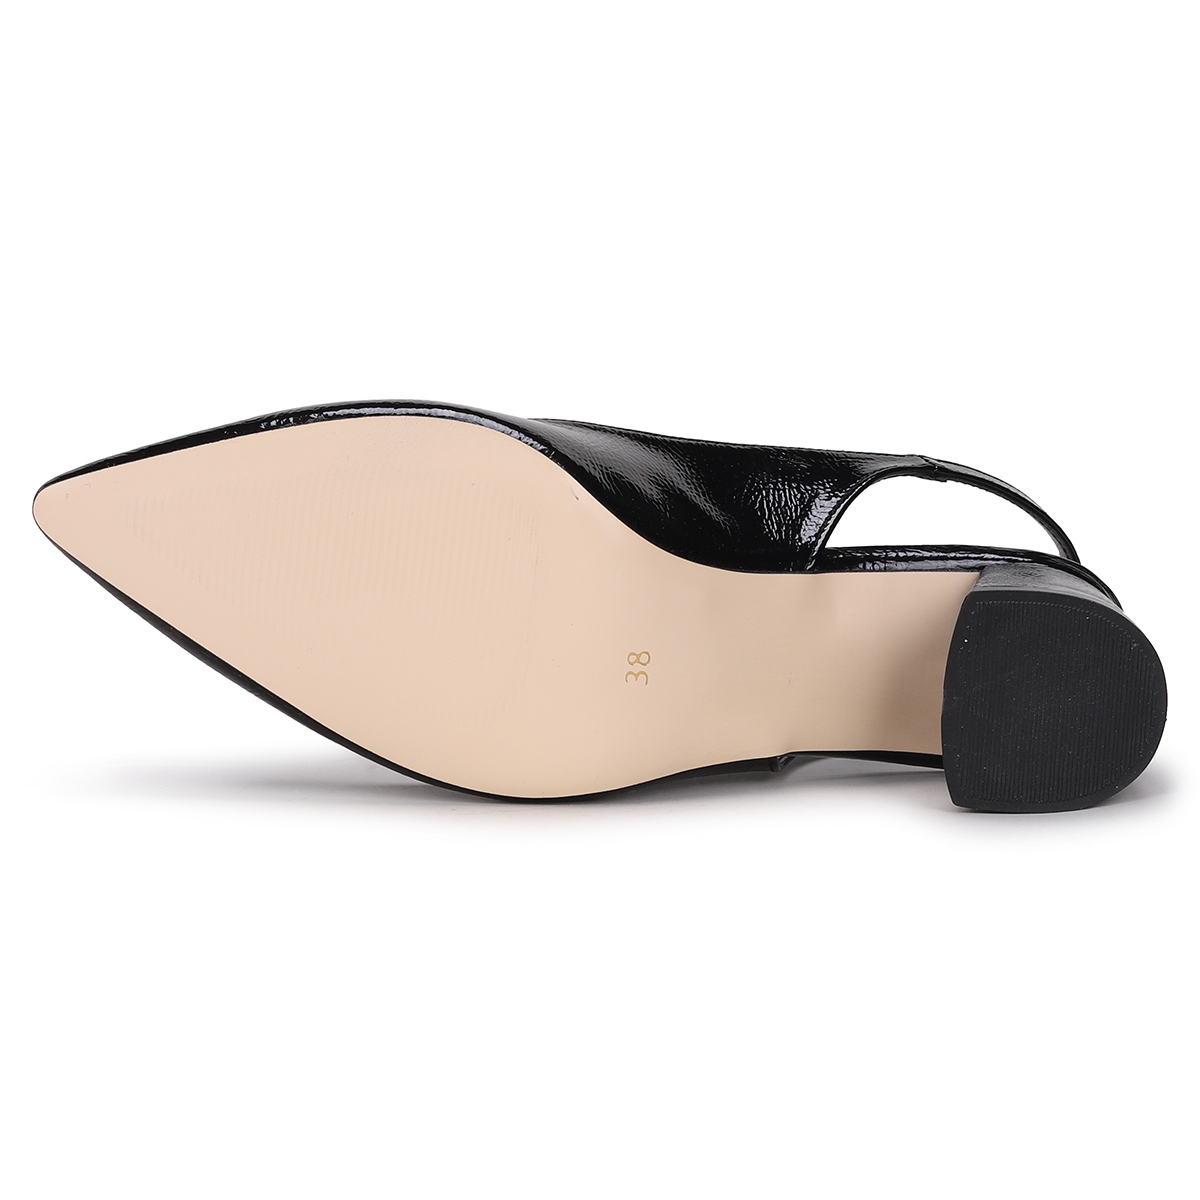 Flo Pnt 304003 Kırışık Rugan 6 Cm Topuk Kadın Sandalet Ayakkabı Siyah. 4